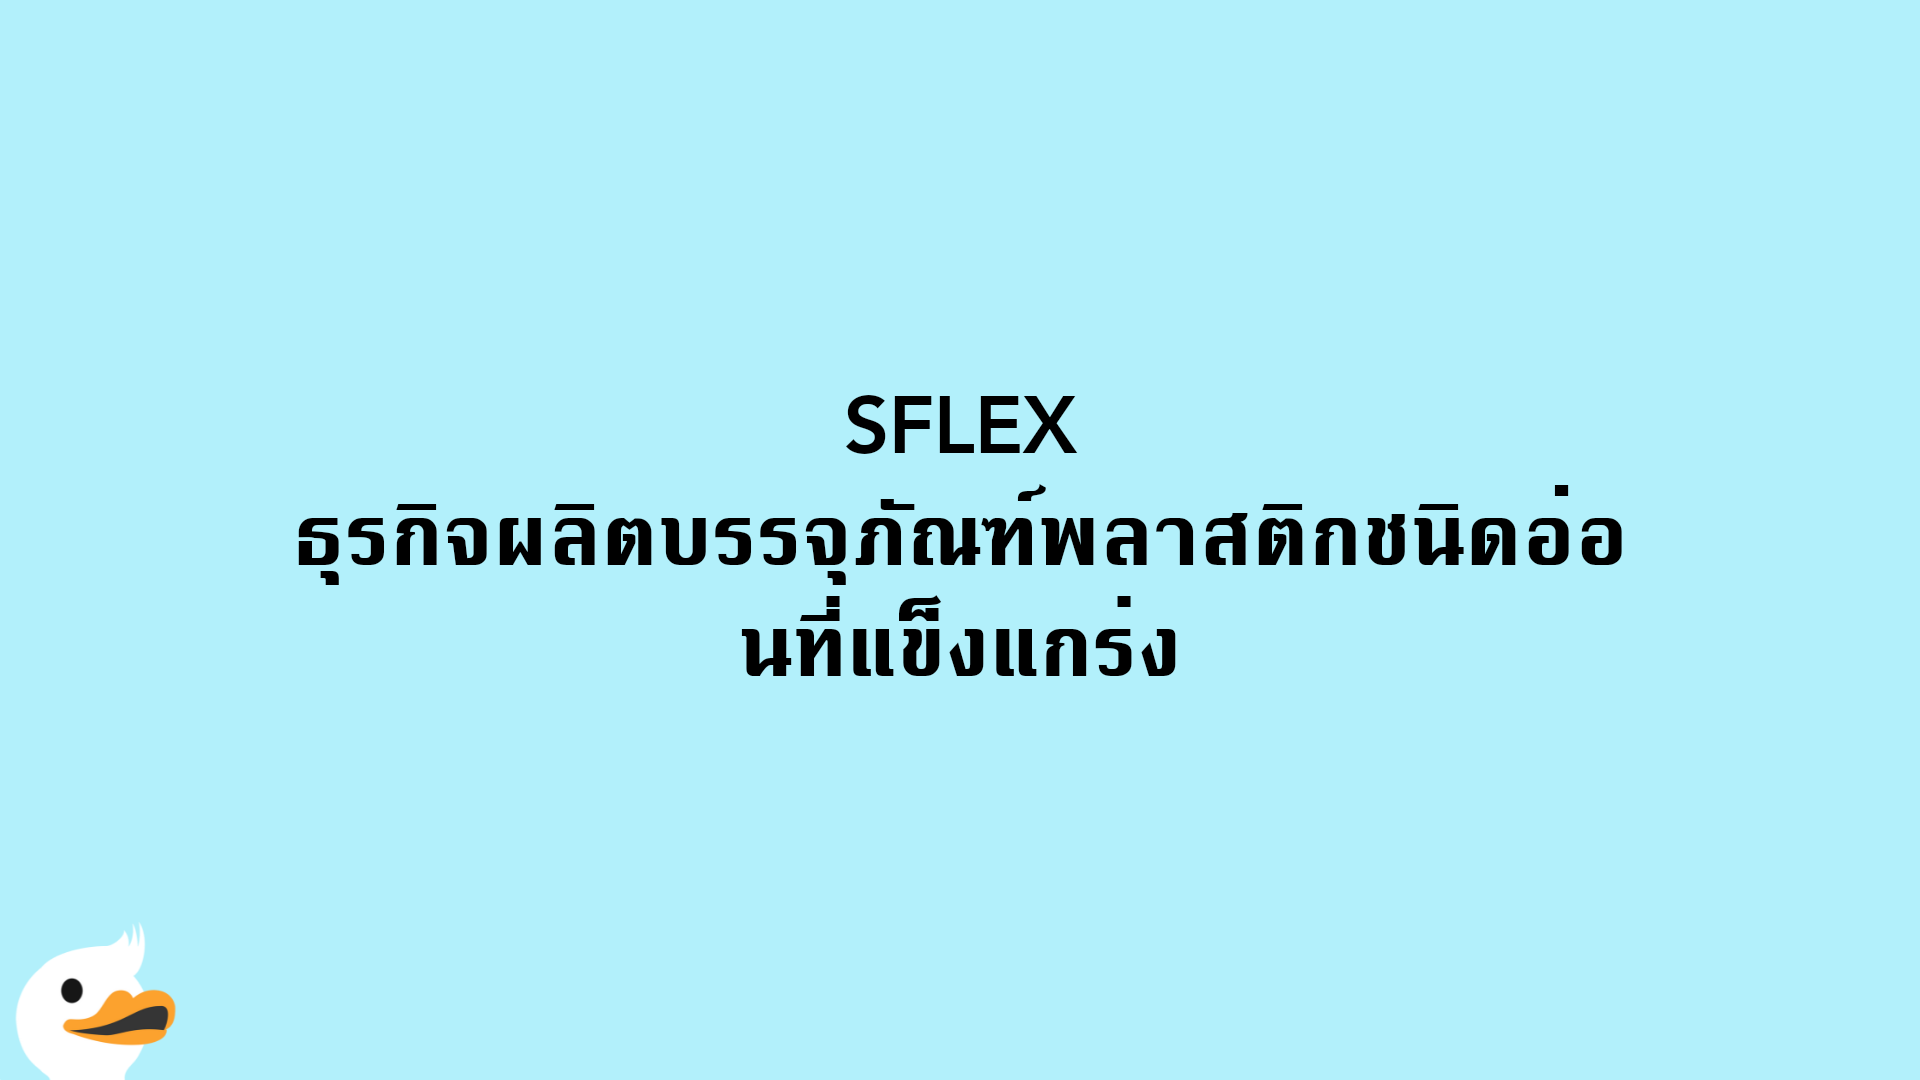 SFLEX ธุรกิจผลิตบรรจุภัณฑ์พลาสติกชนิดอ่อนที่แข็งแกร่ง